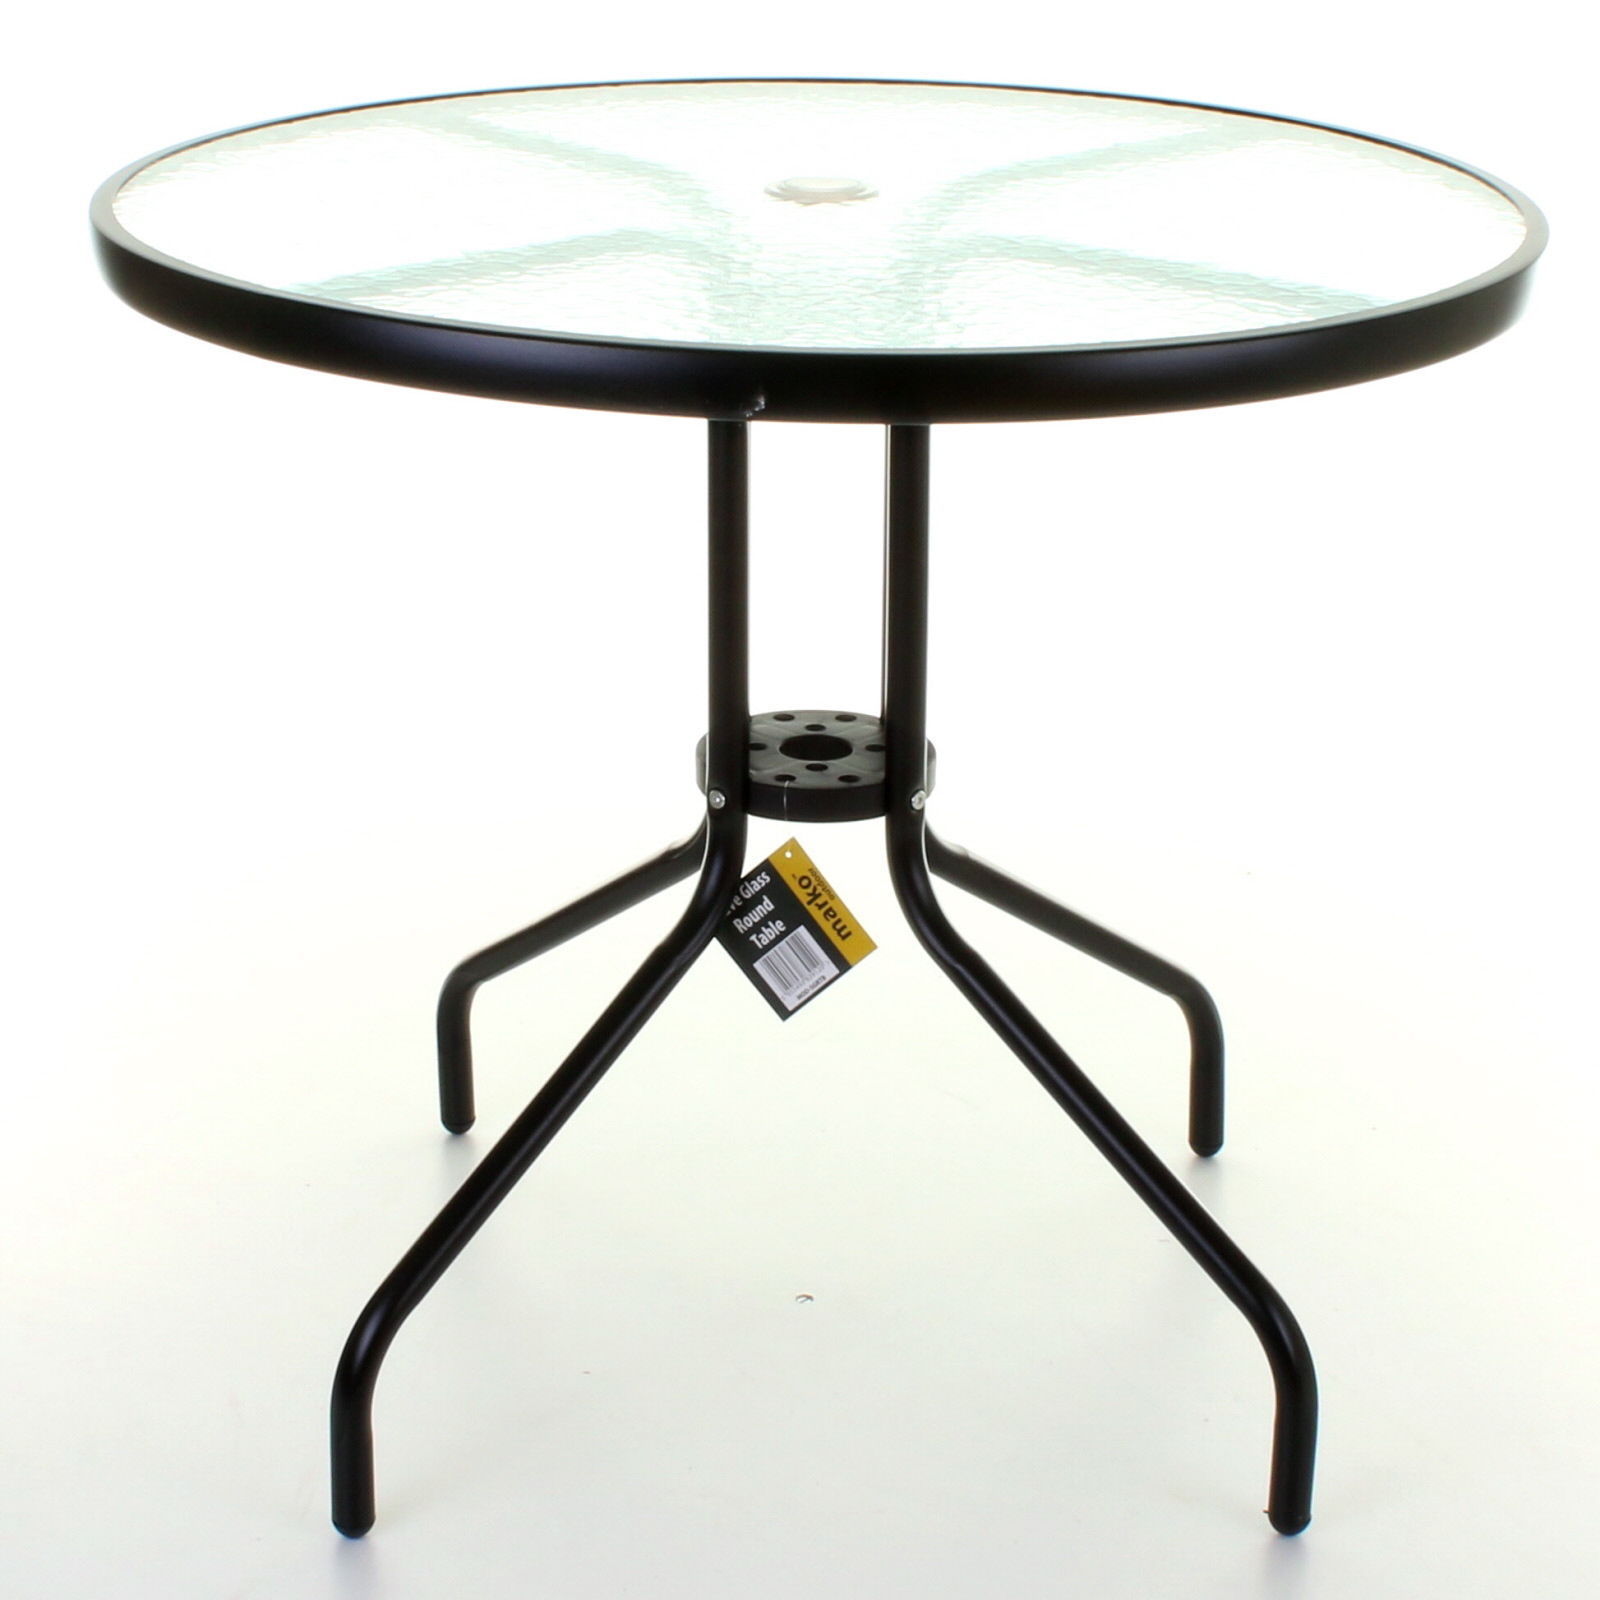 Marko Round Glass Top Table Metal Frame Legs Garden Outdoor Indoor